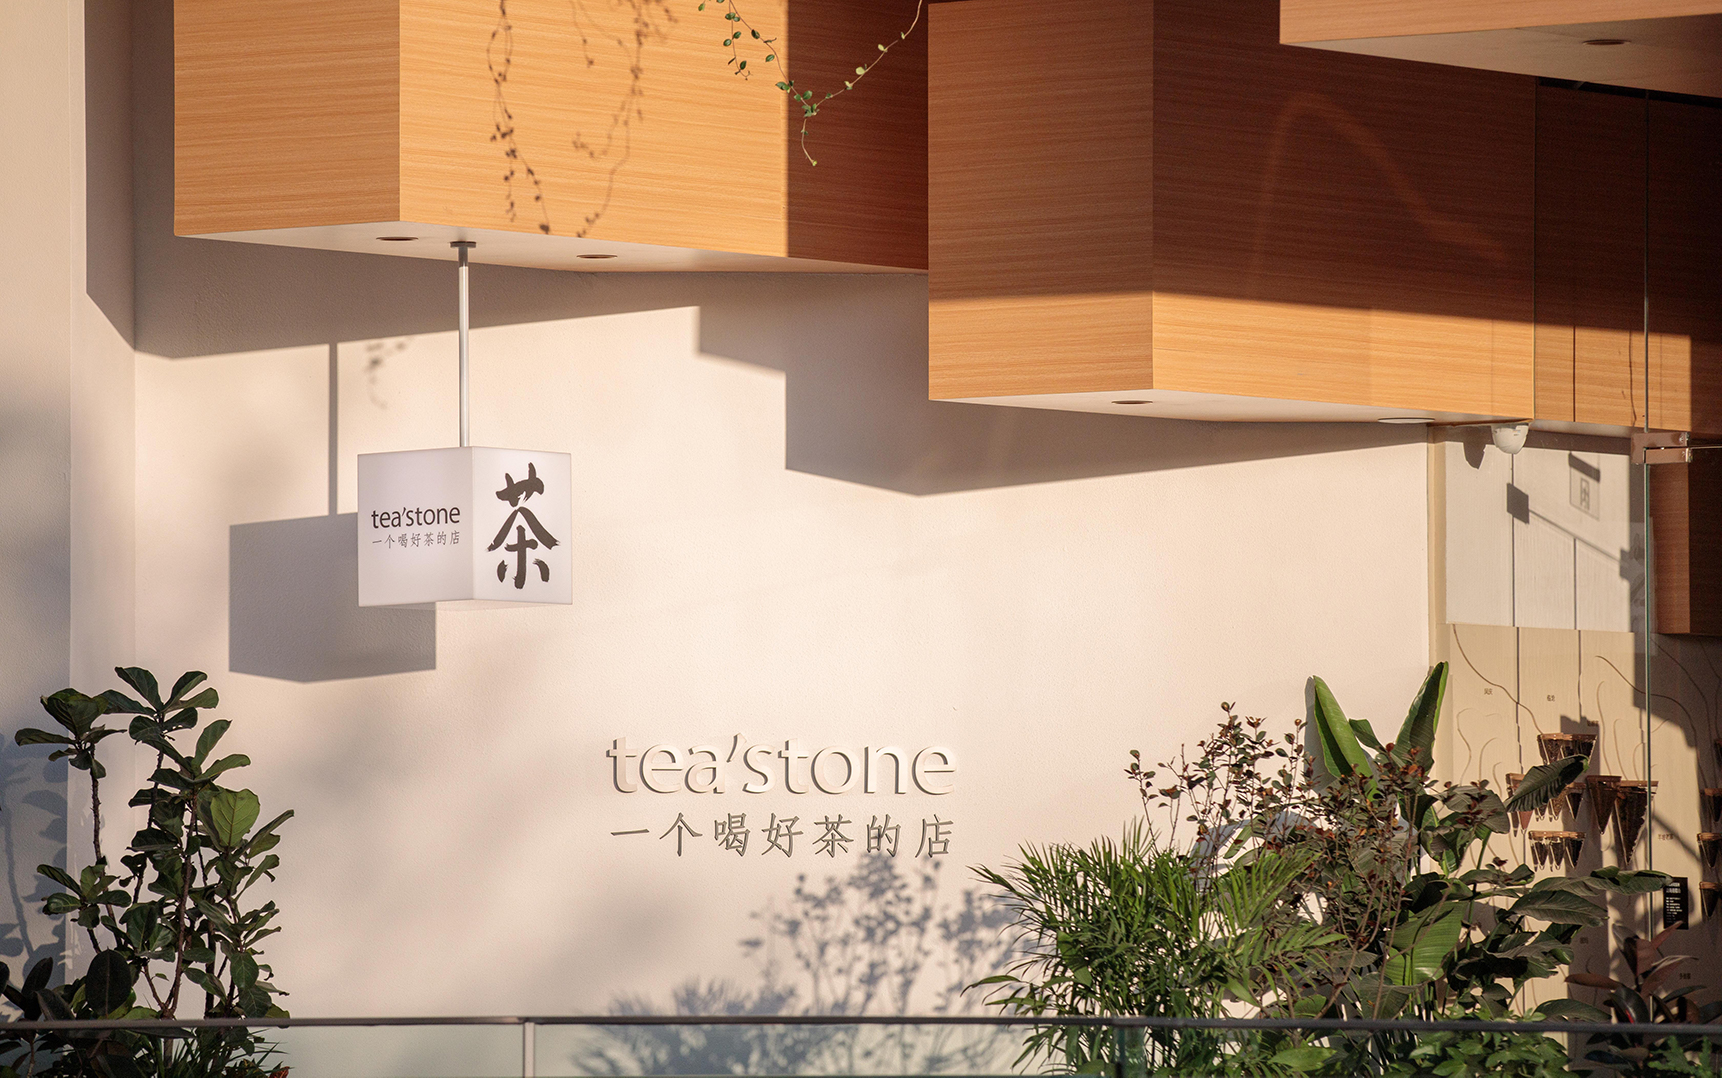 tea'stone：古老的中国茶需要一个年轻的代表品牌｜品牌星球专访